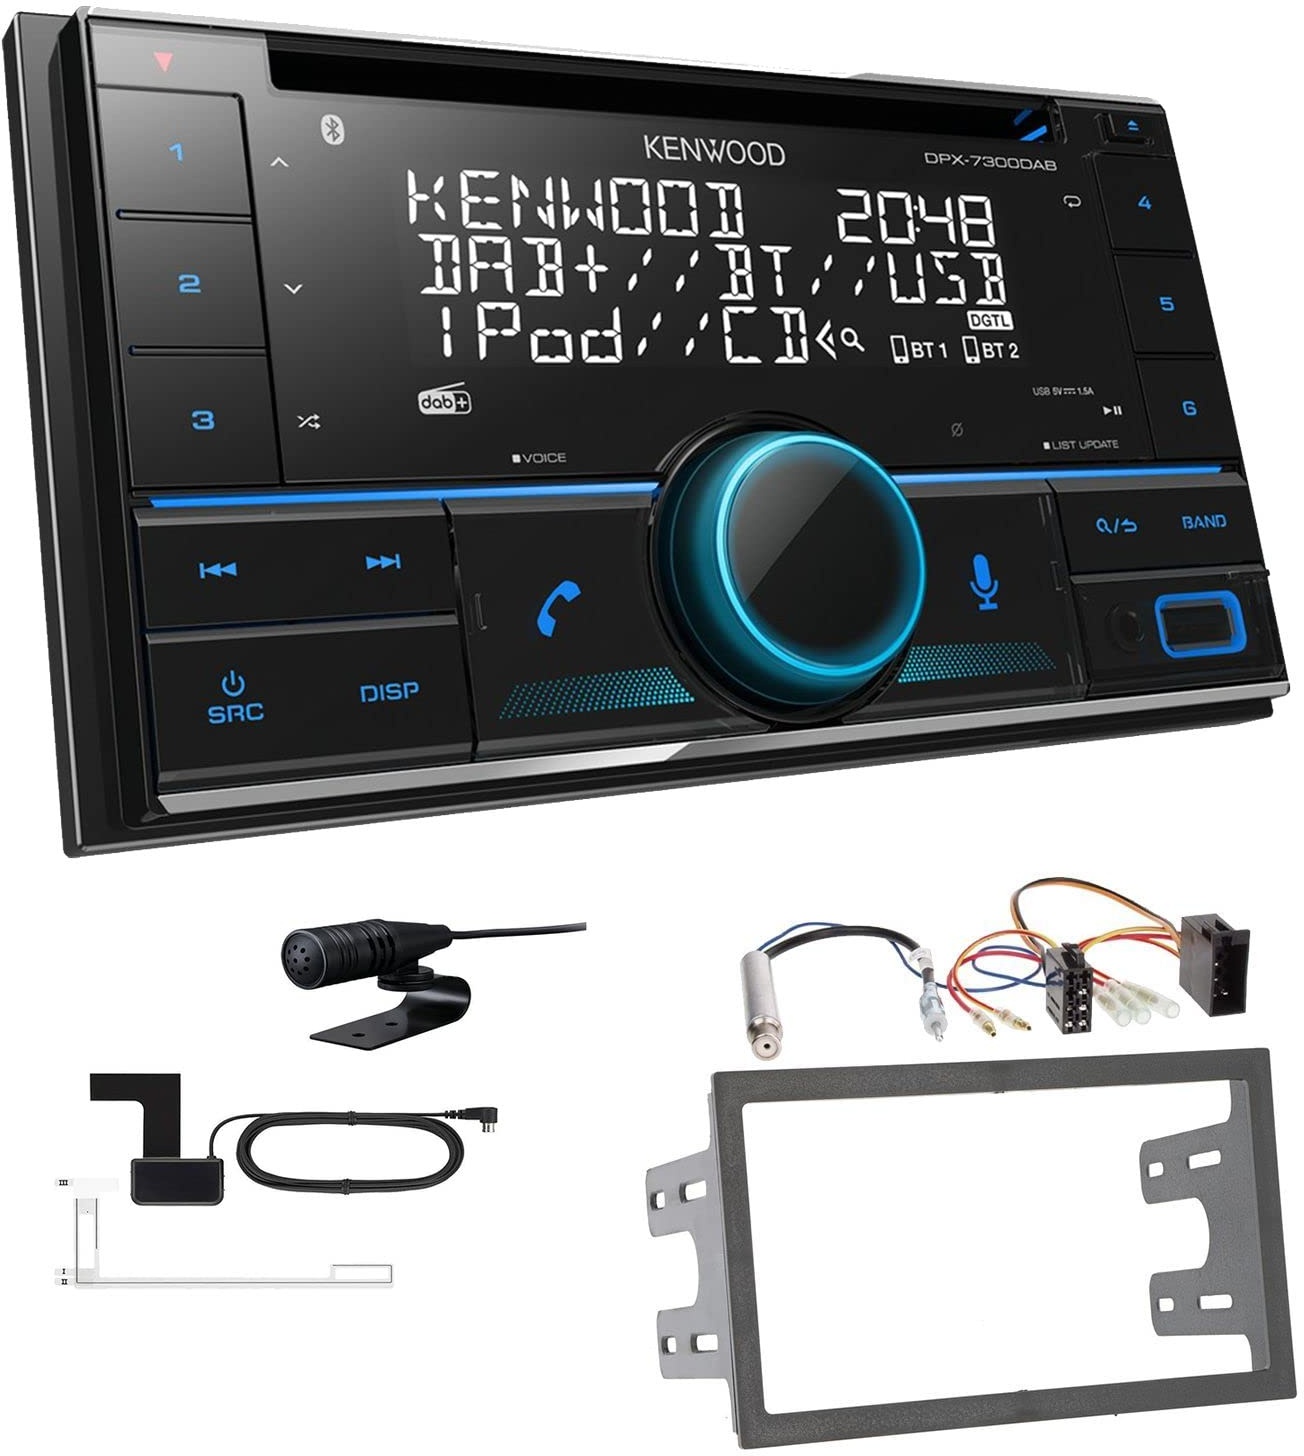 Kenwood DPX-7300DAB 2-DIN Autoradio mit Bluetooth Digitalradio DAB+ USB CD passend für Volkswagen VW Polo 9N bis 2009 schwarz mit ISO